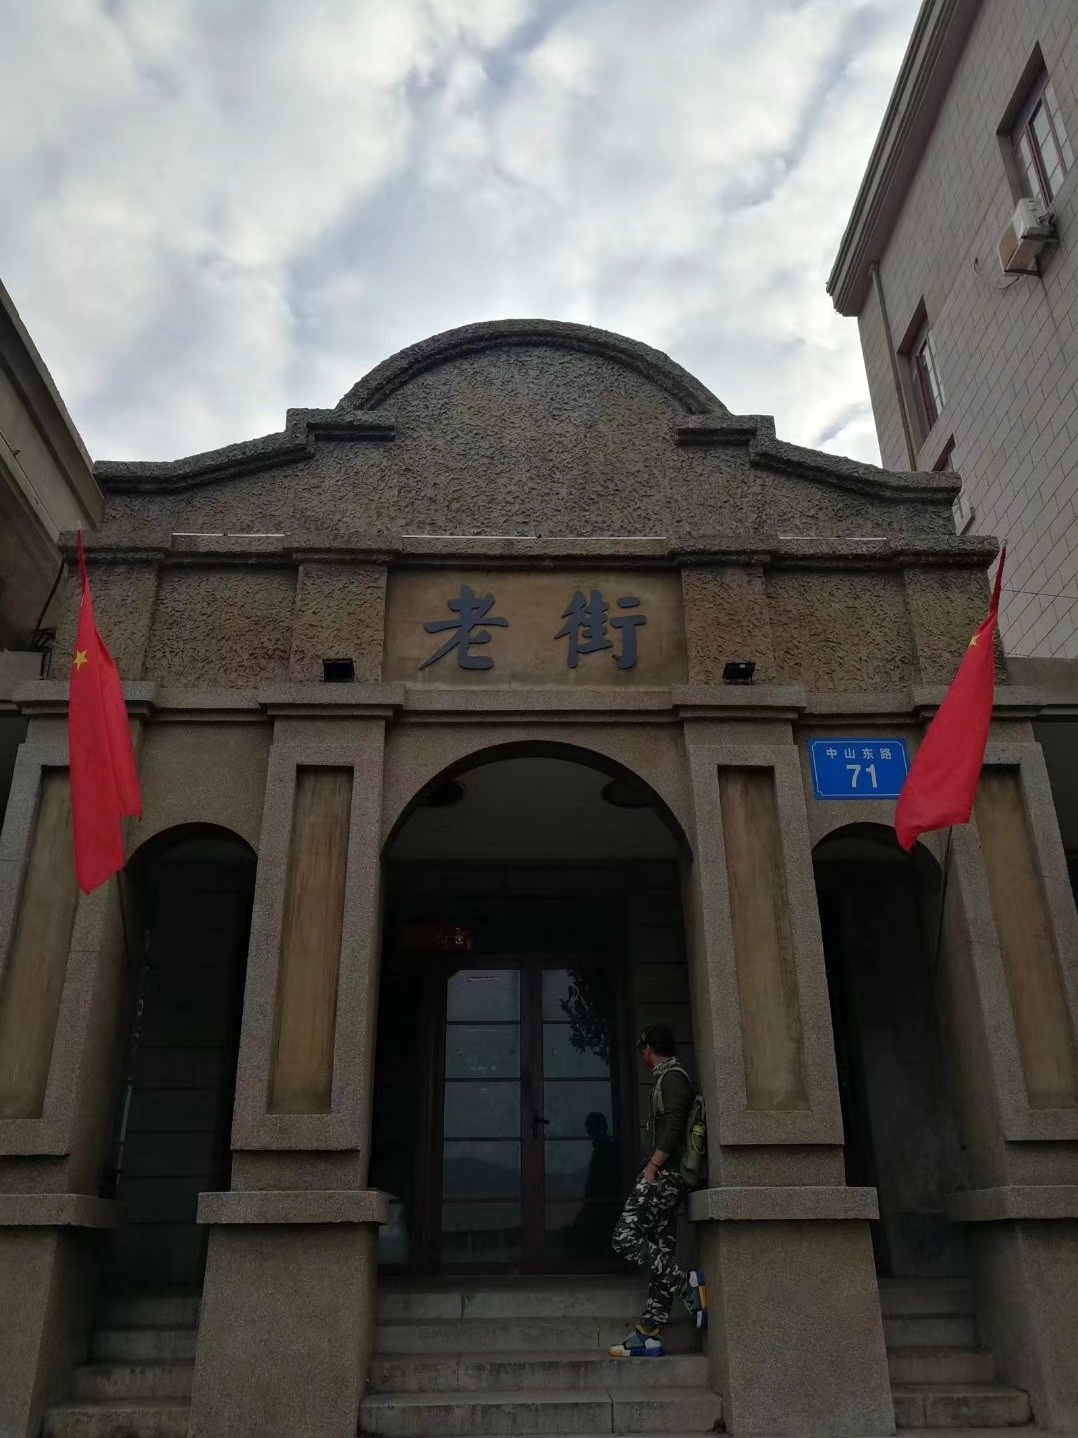 连云港老街的布局，是中国传统的街巷格局、四合院形态